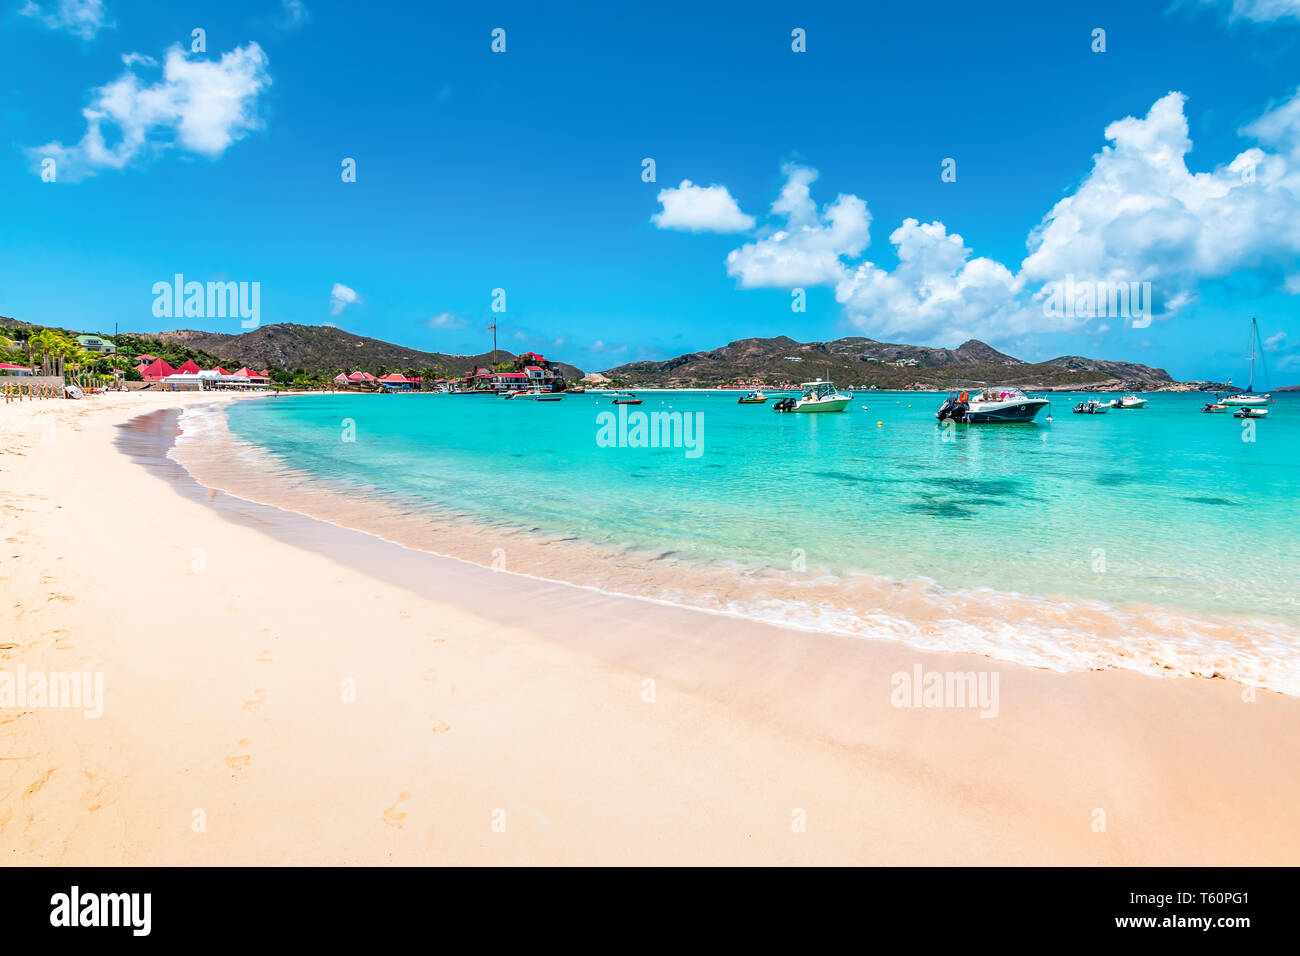 Belle plage, St Barth, Caraïbes Banque D'Images